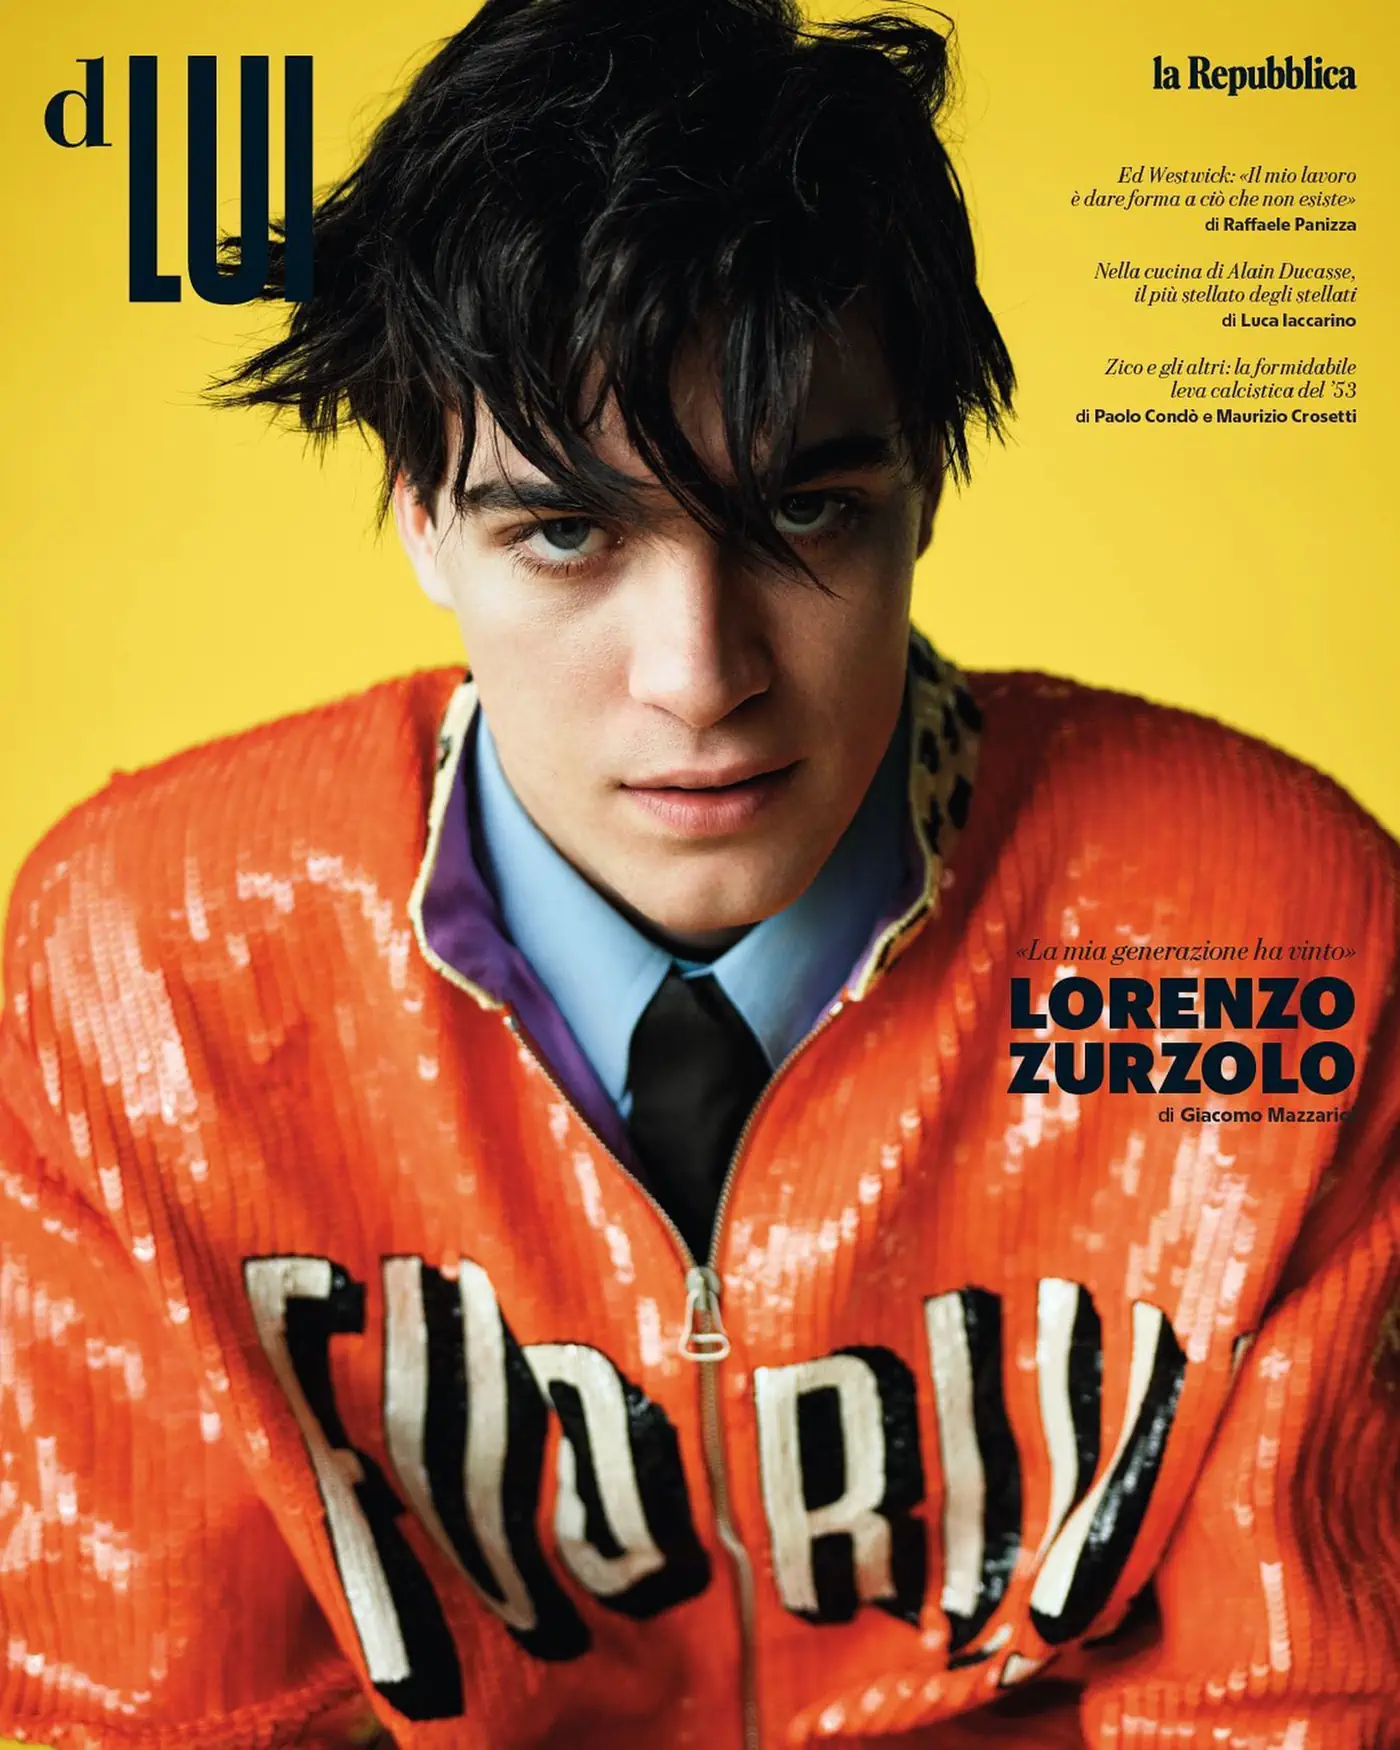 Lorenzo Zurzolo in Gucci on D Lui la Repubblica February 25th, 2023 by Johan Sandberg